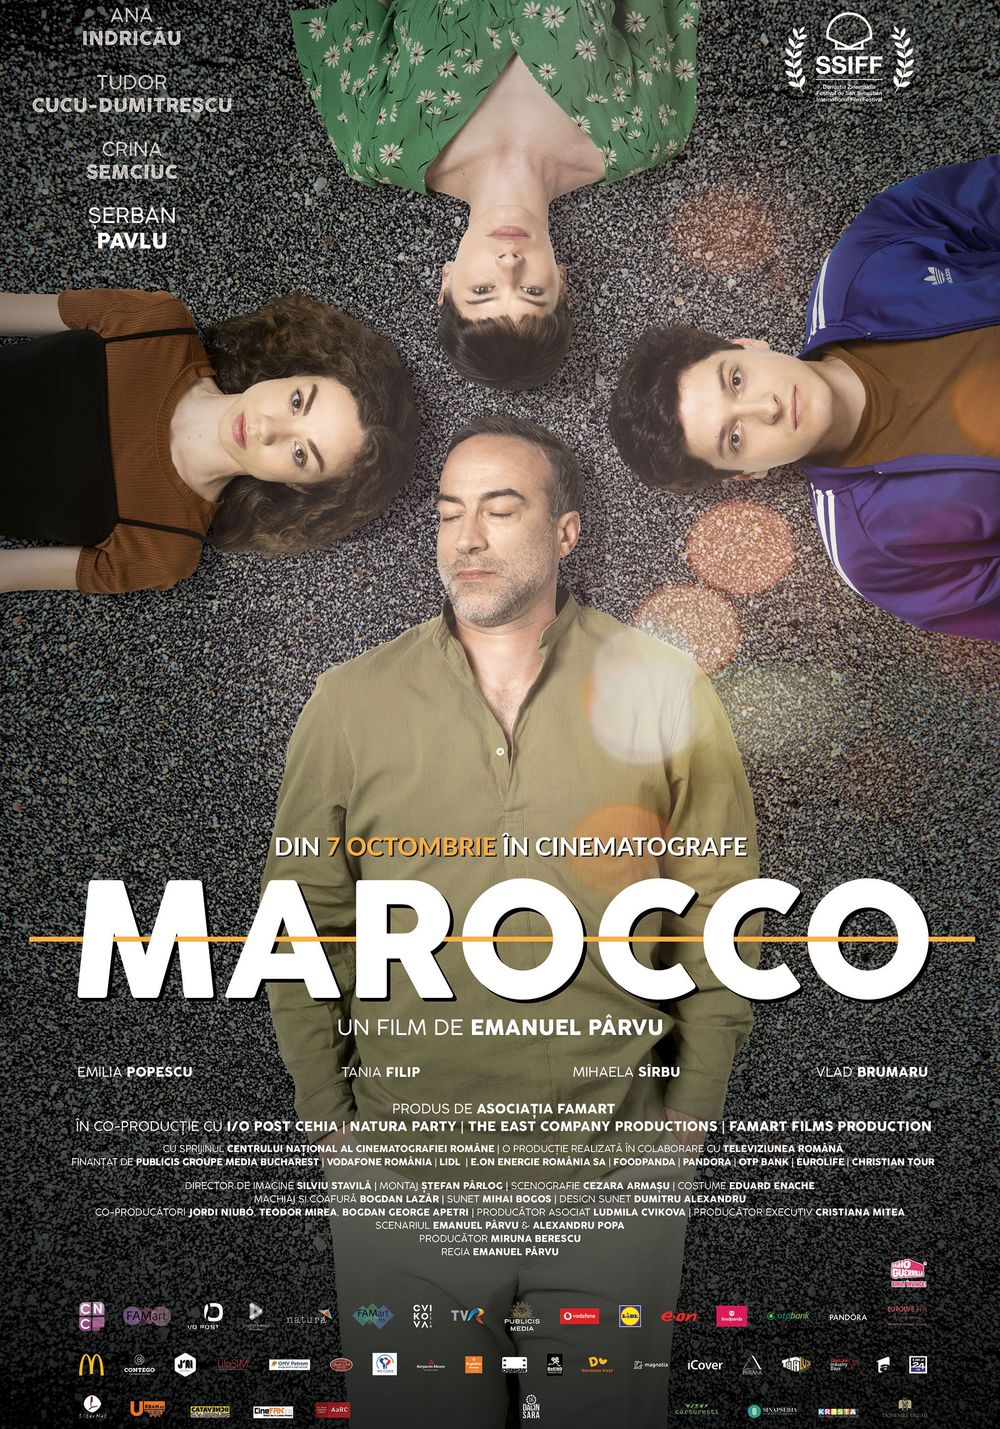 Poster al filmului "Marocco"